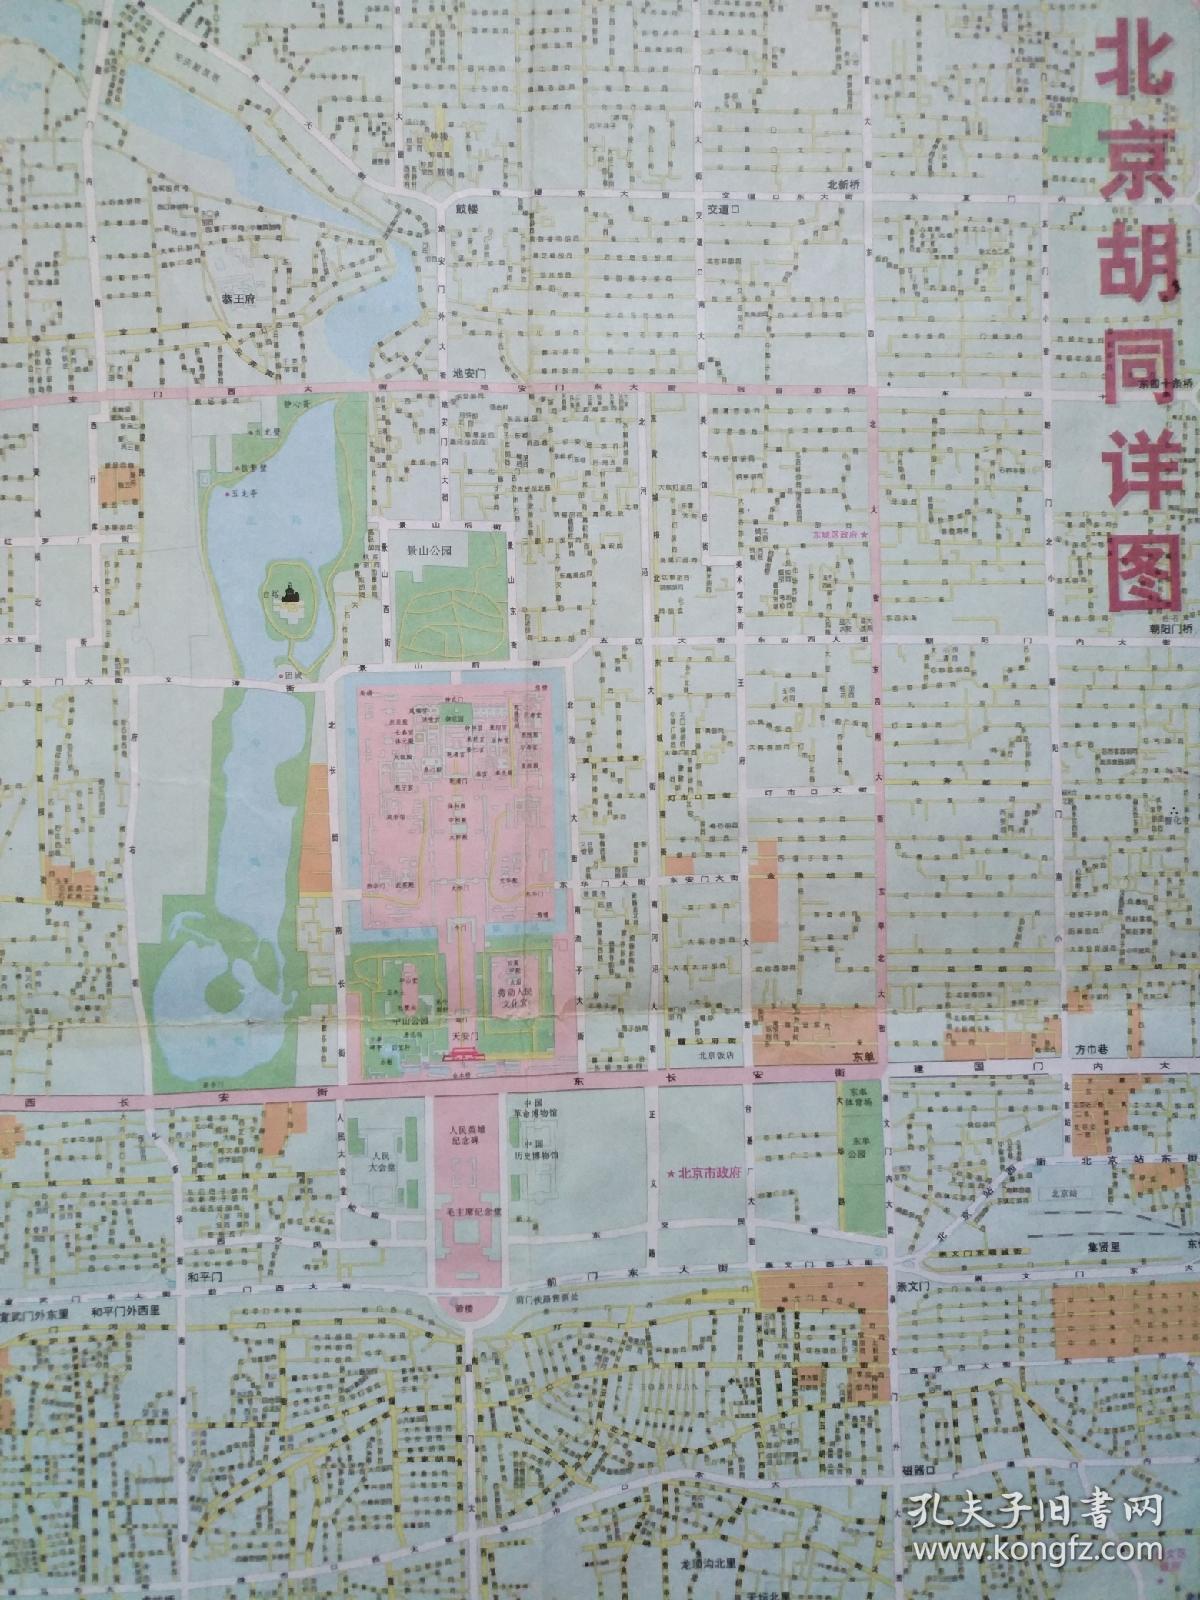 2开 1997年版 背面有极其详细的北京胡同地图!图片